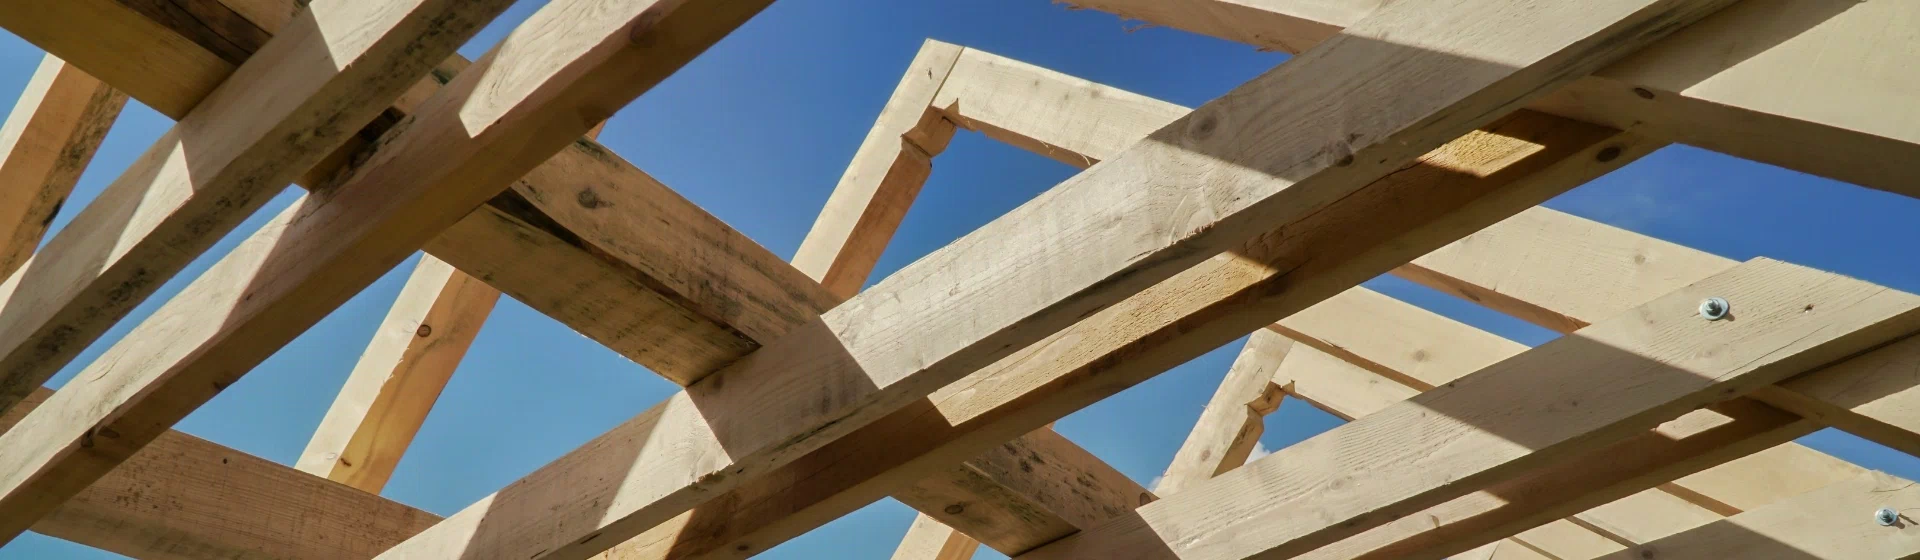 konstrukcja dachu z belek drewnianych